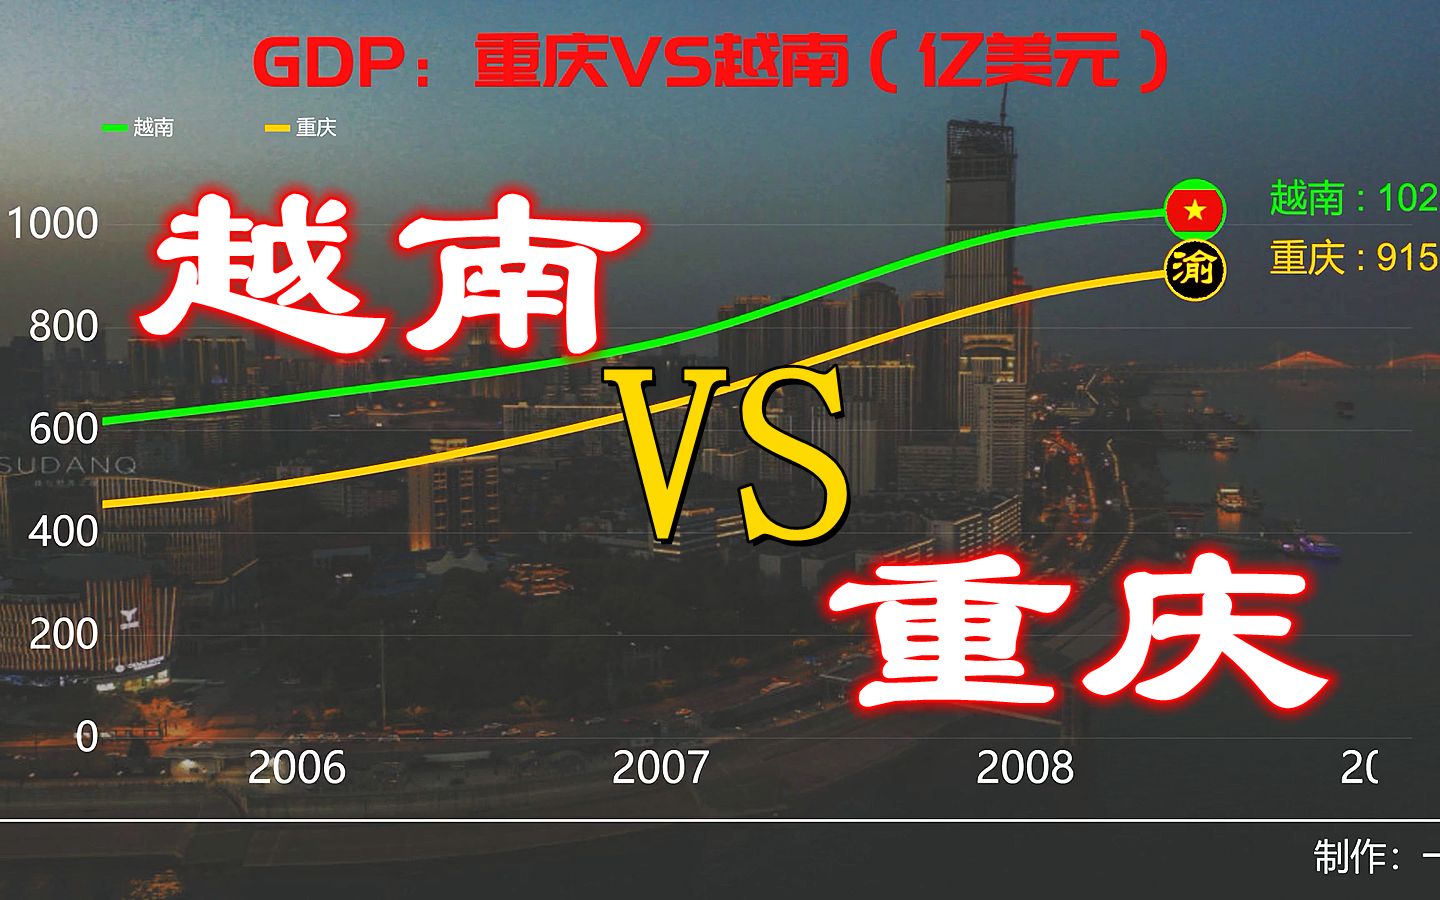 1985-2021年重庆和越南生产总值变化，据说越南发展很凶